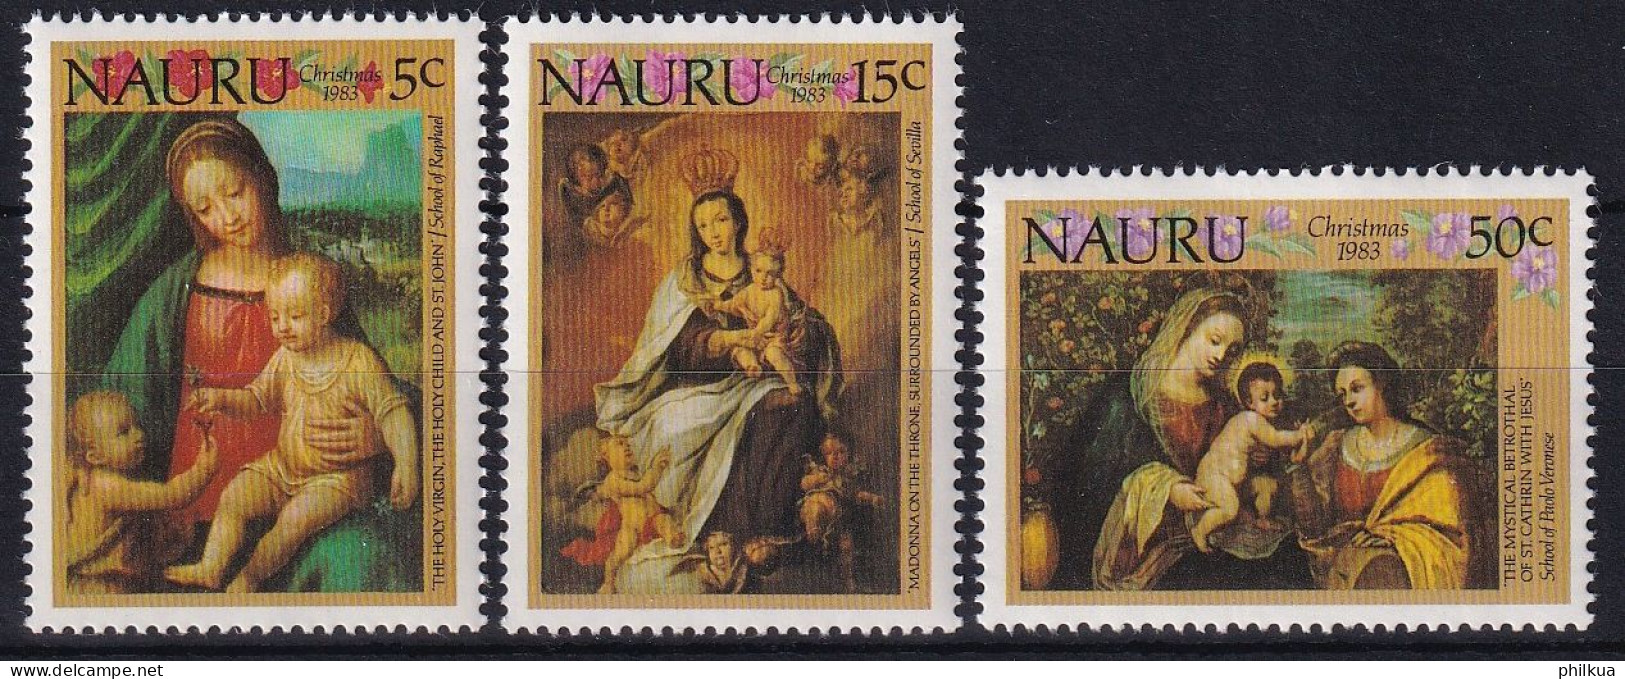 MiNr. 276 - 278 Nauru 1983, 16. Nov. Weihnachten - Postfrisch/**/MNH - Nauru